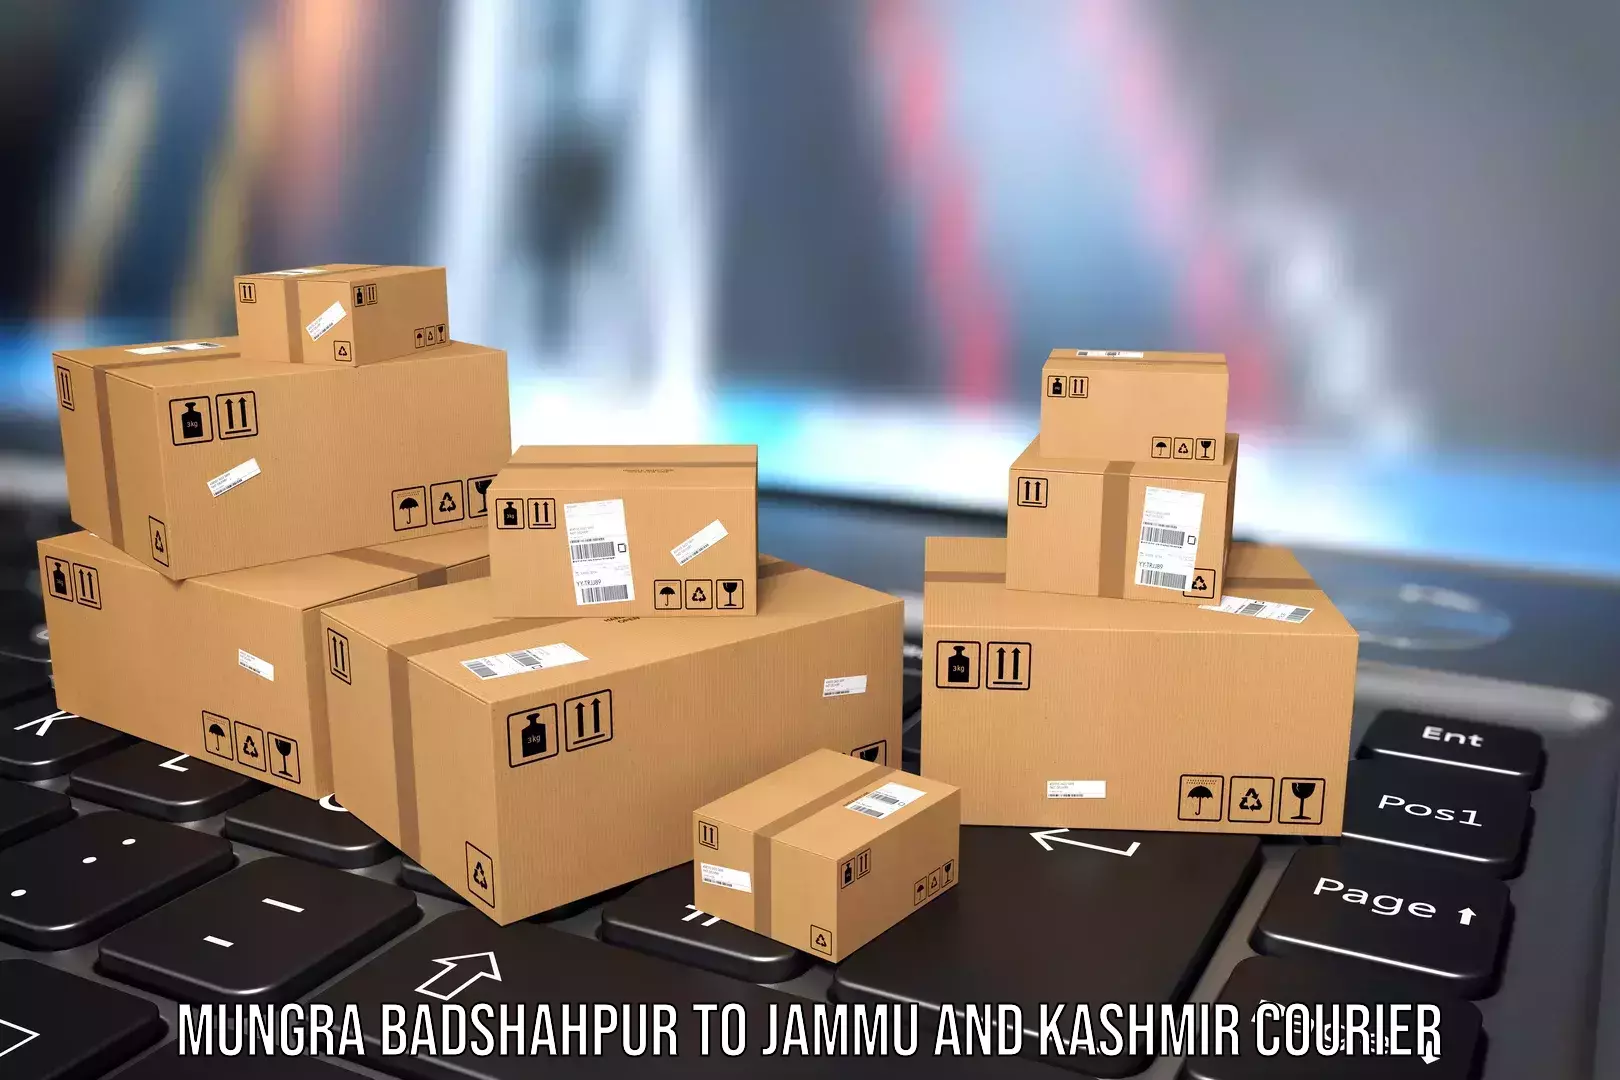 Luggage shipment tracking Mungra Badshahpur to Bhaderwah